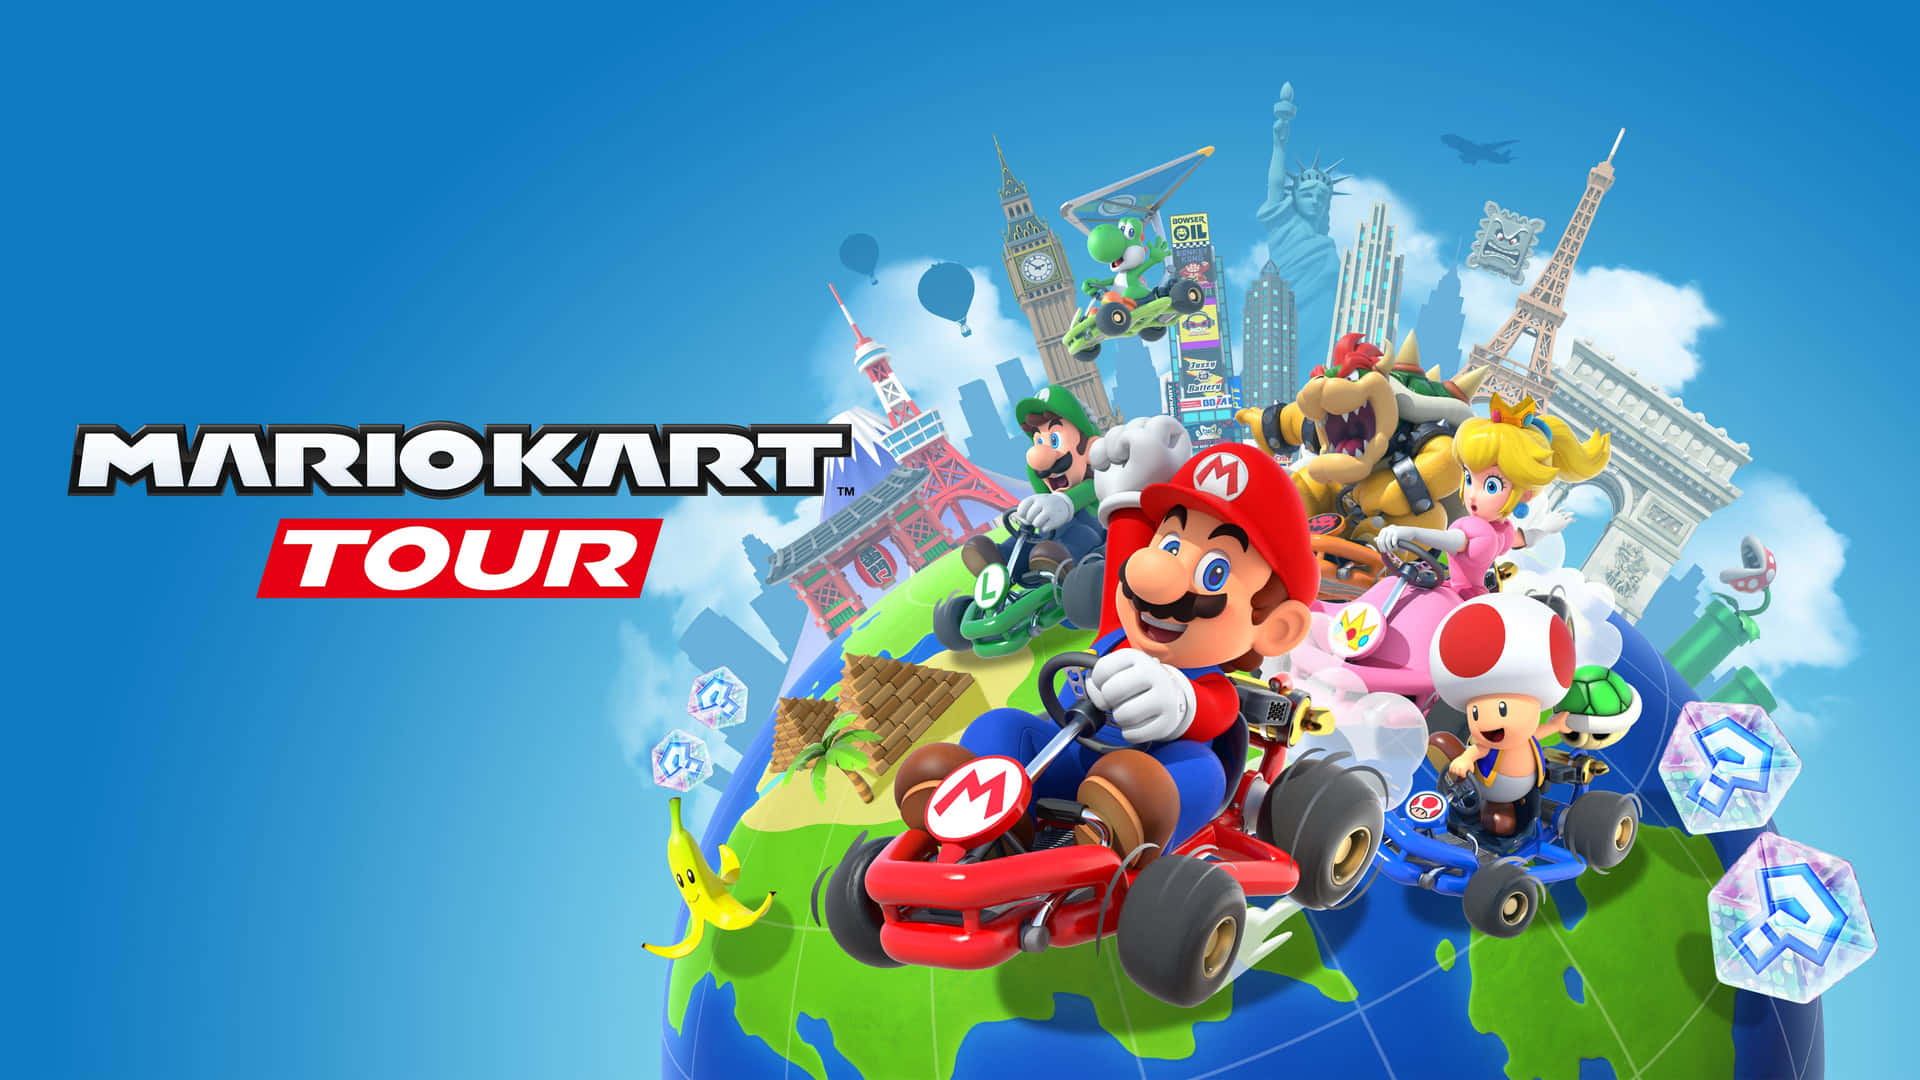 Mariokart Tour - Nintendo Kart Tour